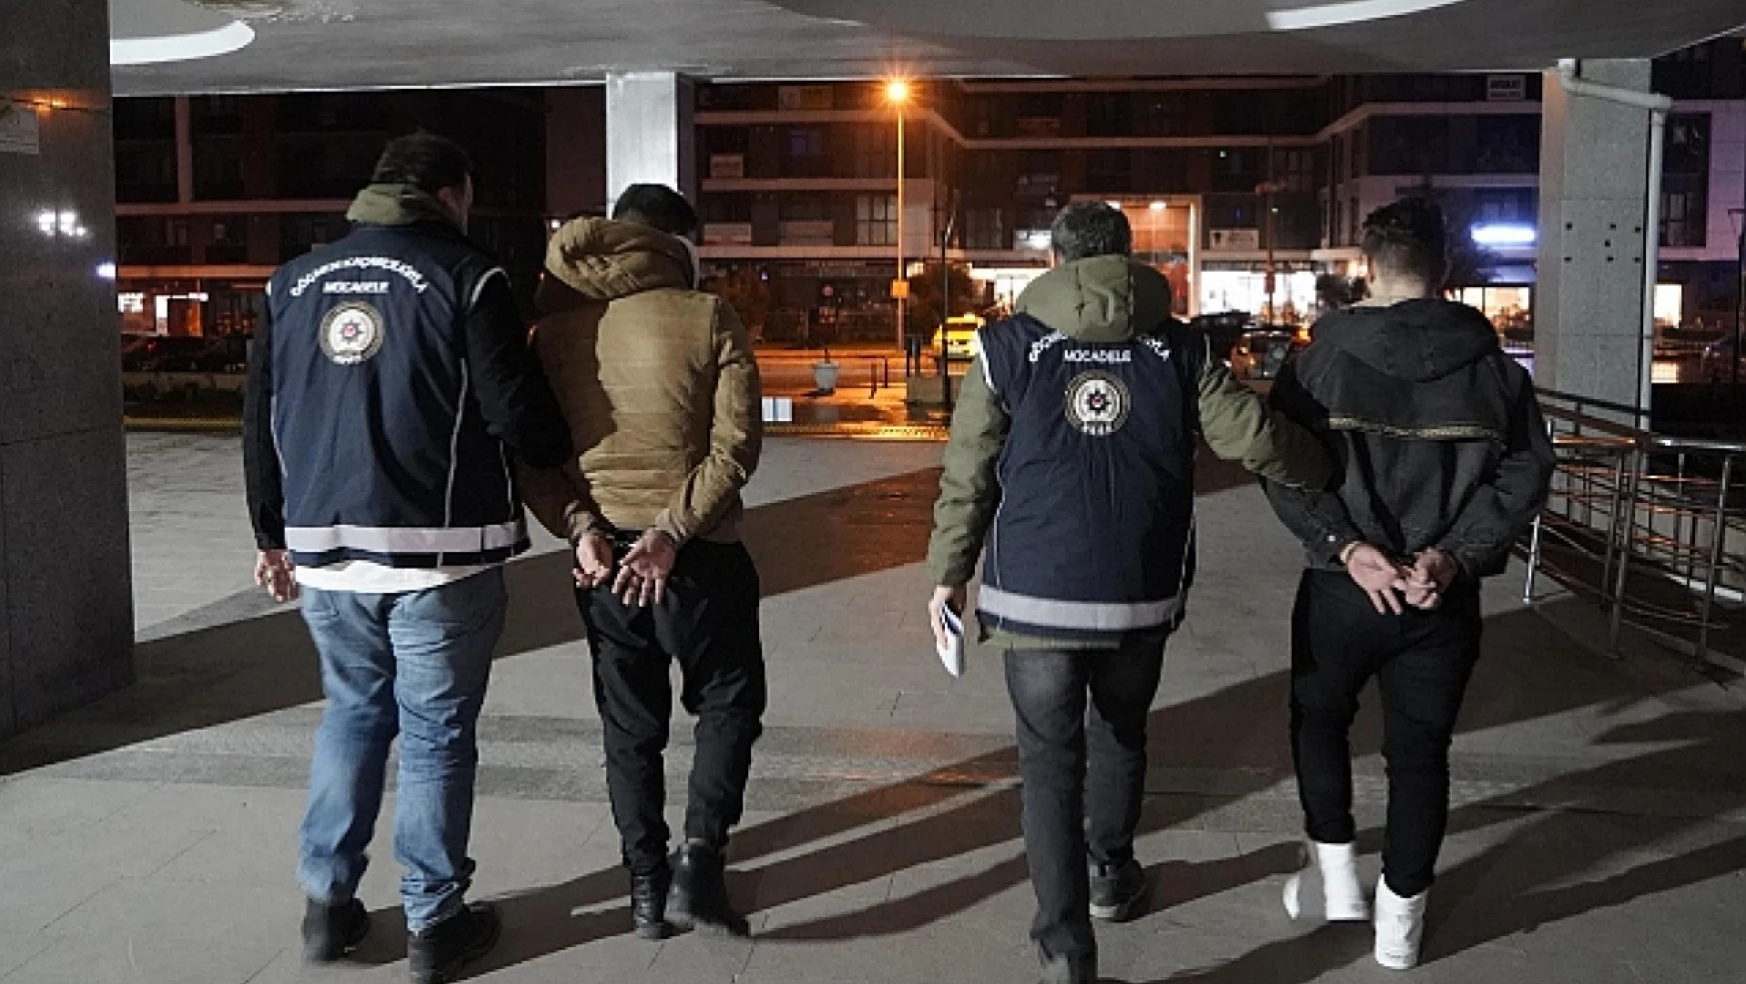 Van'da 10 organizatör tutuklandı